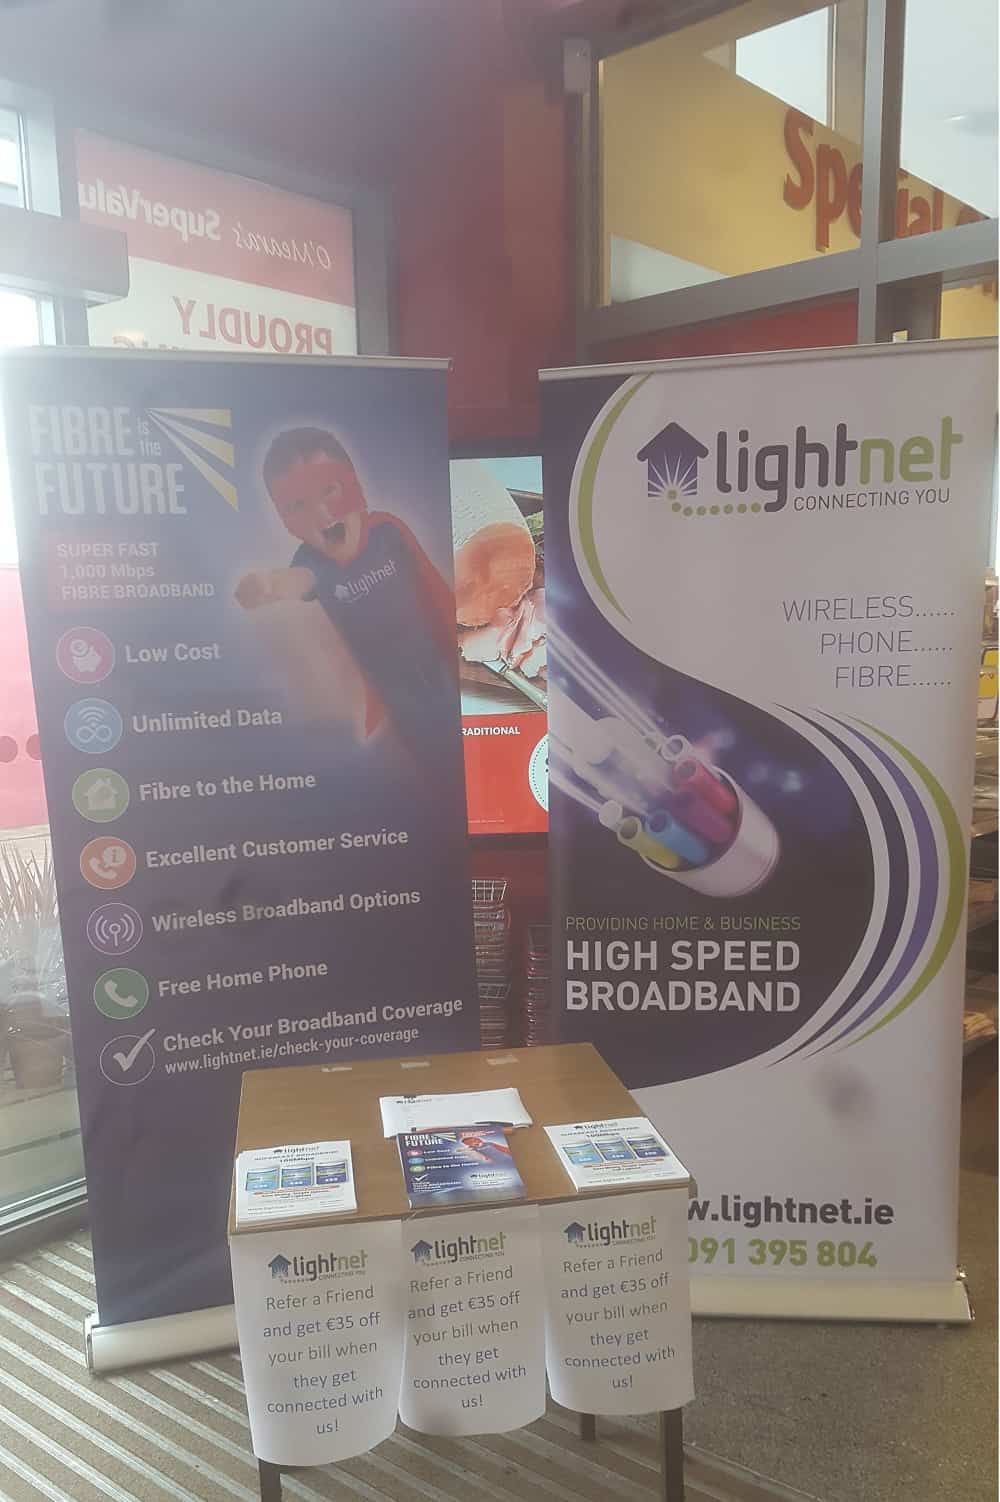 Lightnet in Super Valu Loughrea Today Friday June 15th, Lightnet Broadband